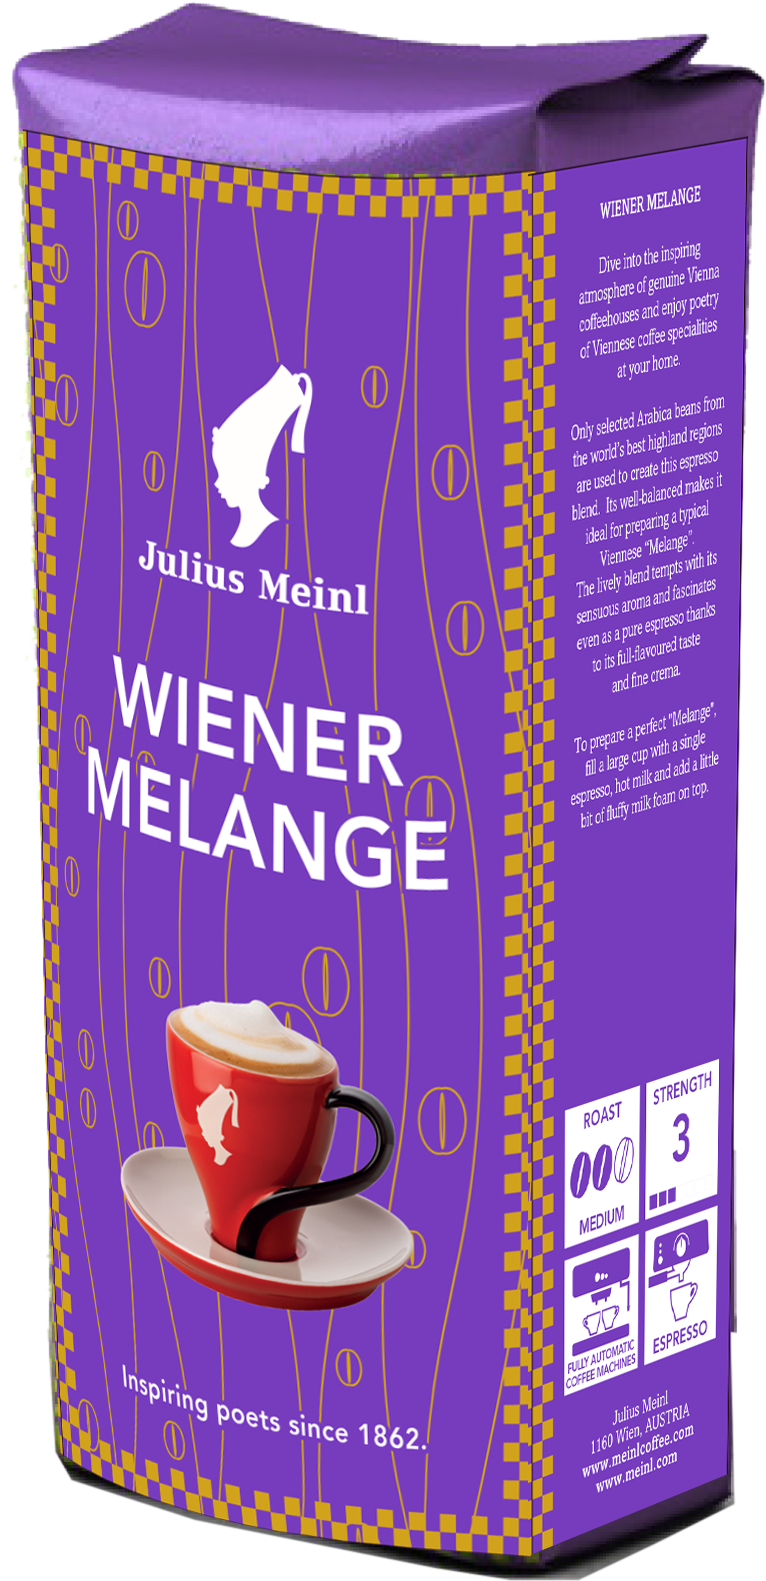 Viennese Melange Julius Meinl. Джулиус Майнл кофе в зернах. Julius Meinl растворимый кофе. Кофе Julius Meinl Espresso. Кофе в зернах купить julius